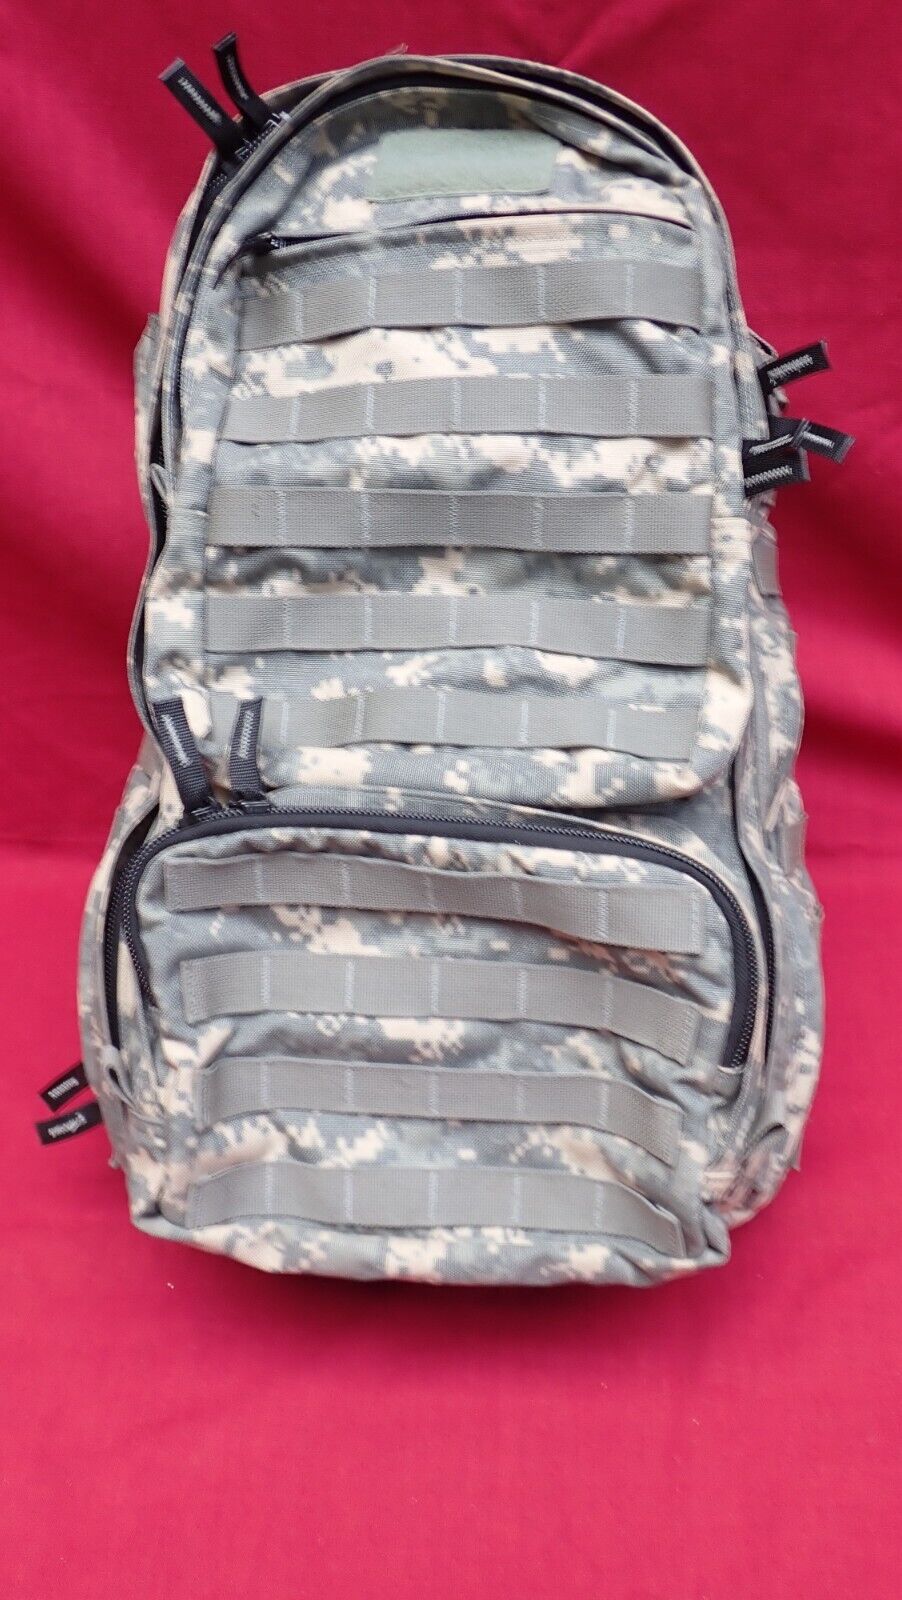 Battlelab Backpack BLPF81 SOF ASSAULT PACK Diamond Back Tactical